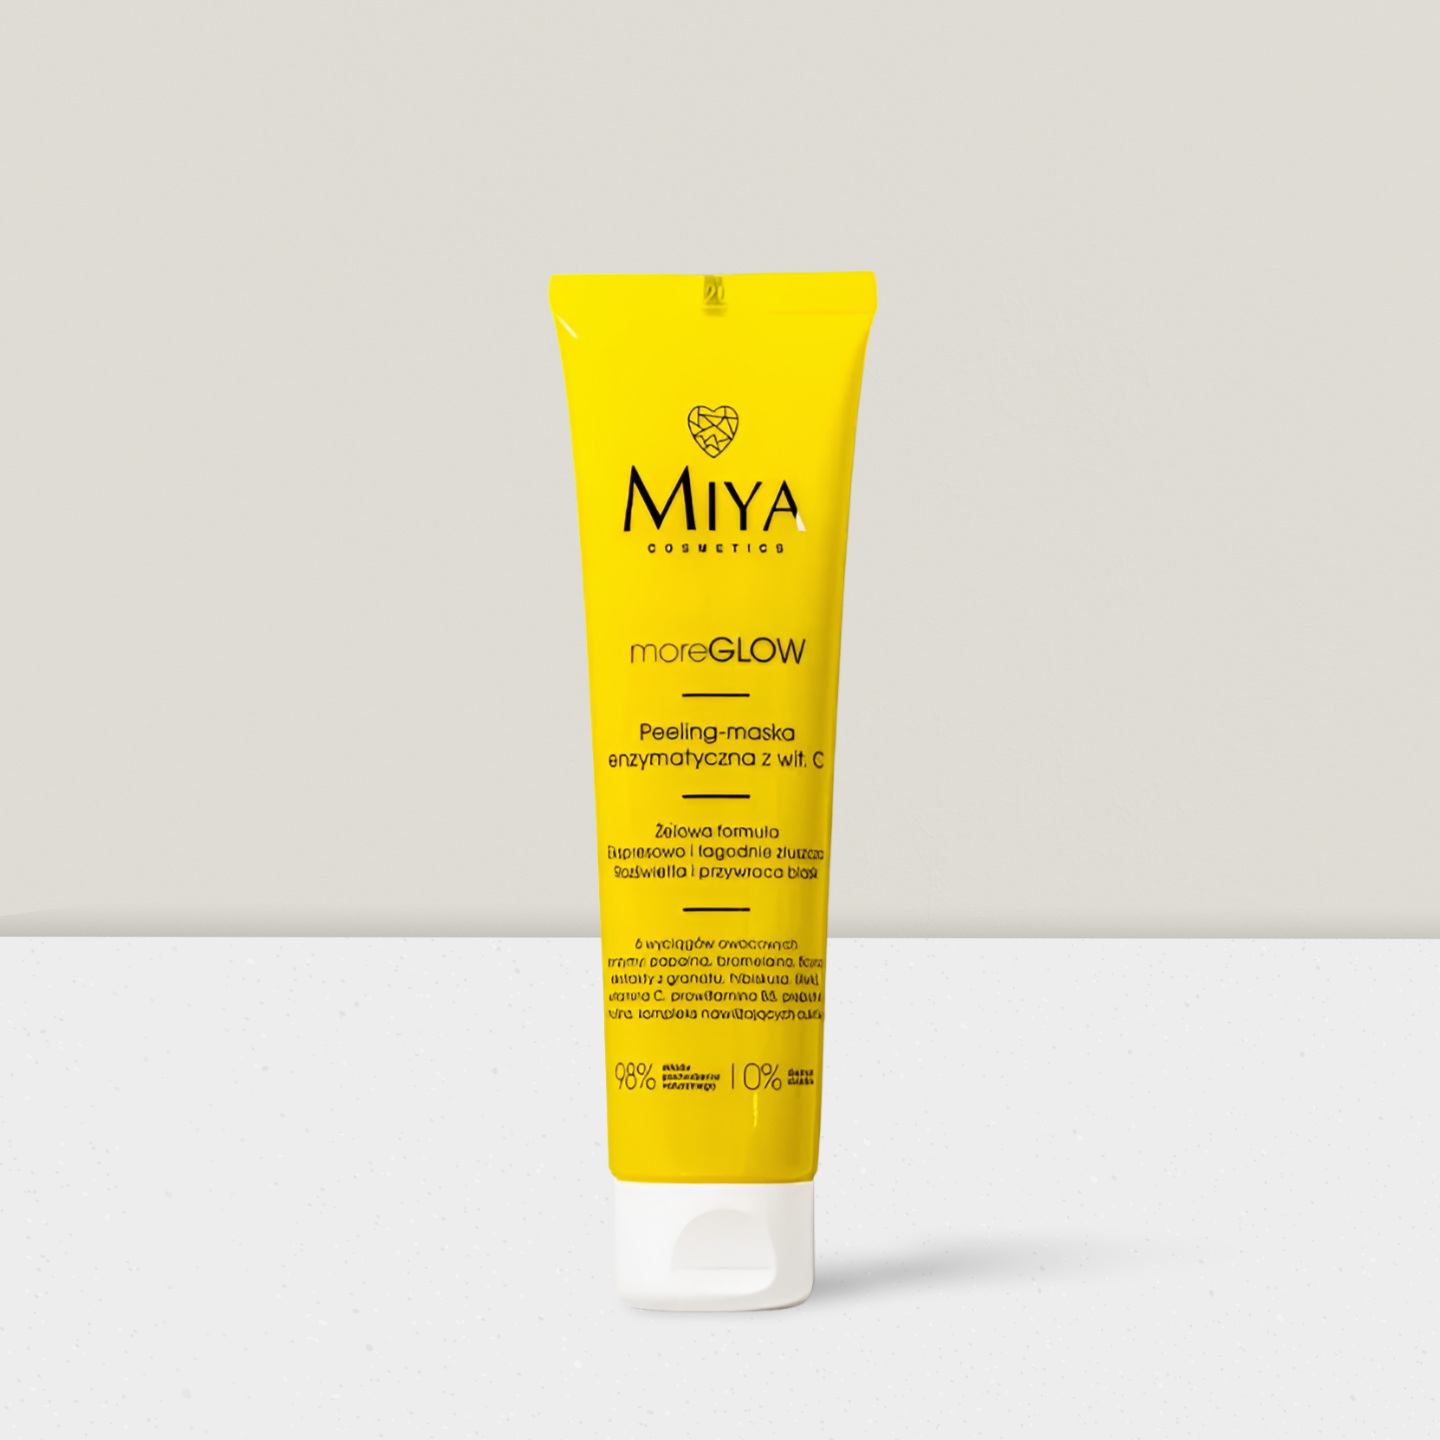 MIYA Cosmetics - MoreGLOW Peeling-Maska Enzymatyczna z witaminą C - 60ml